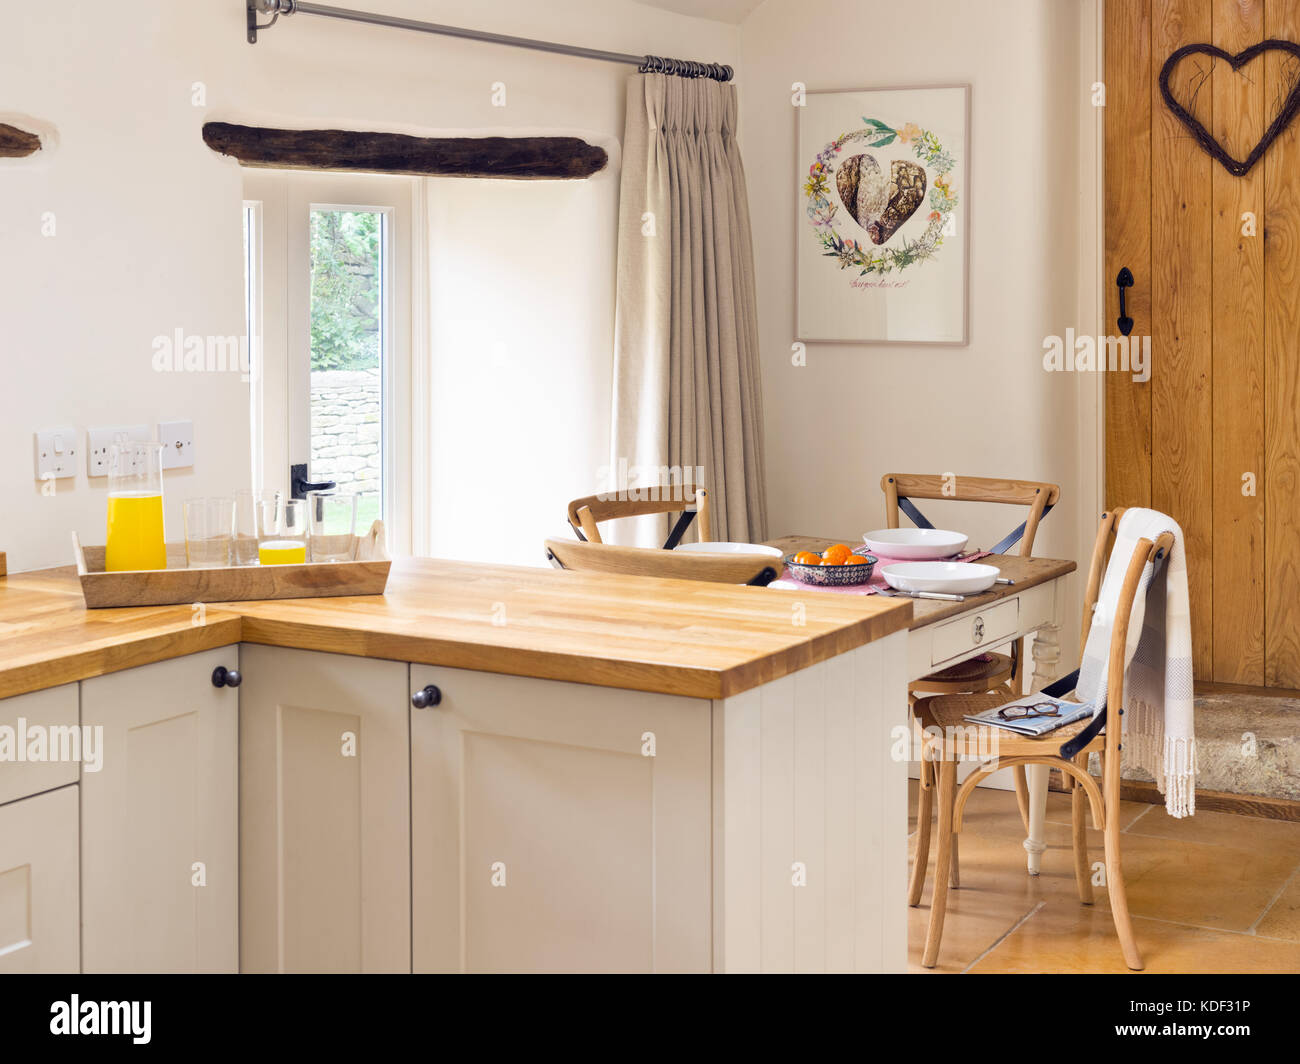 Una cocina comedor, mostrando crema estilo shaker, armarios de madera maciza y encimera de cocina pequeña tabla. Foto de stock